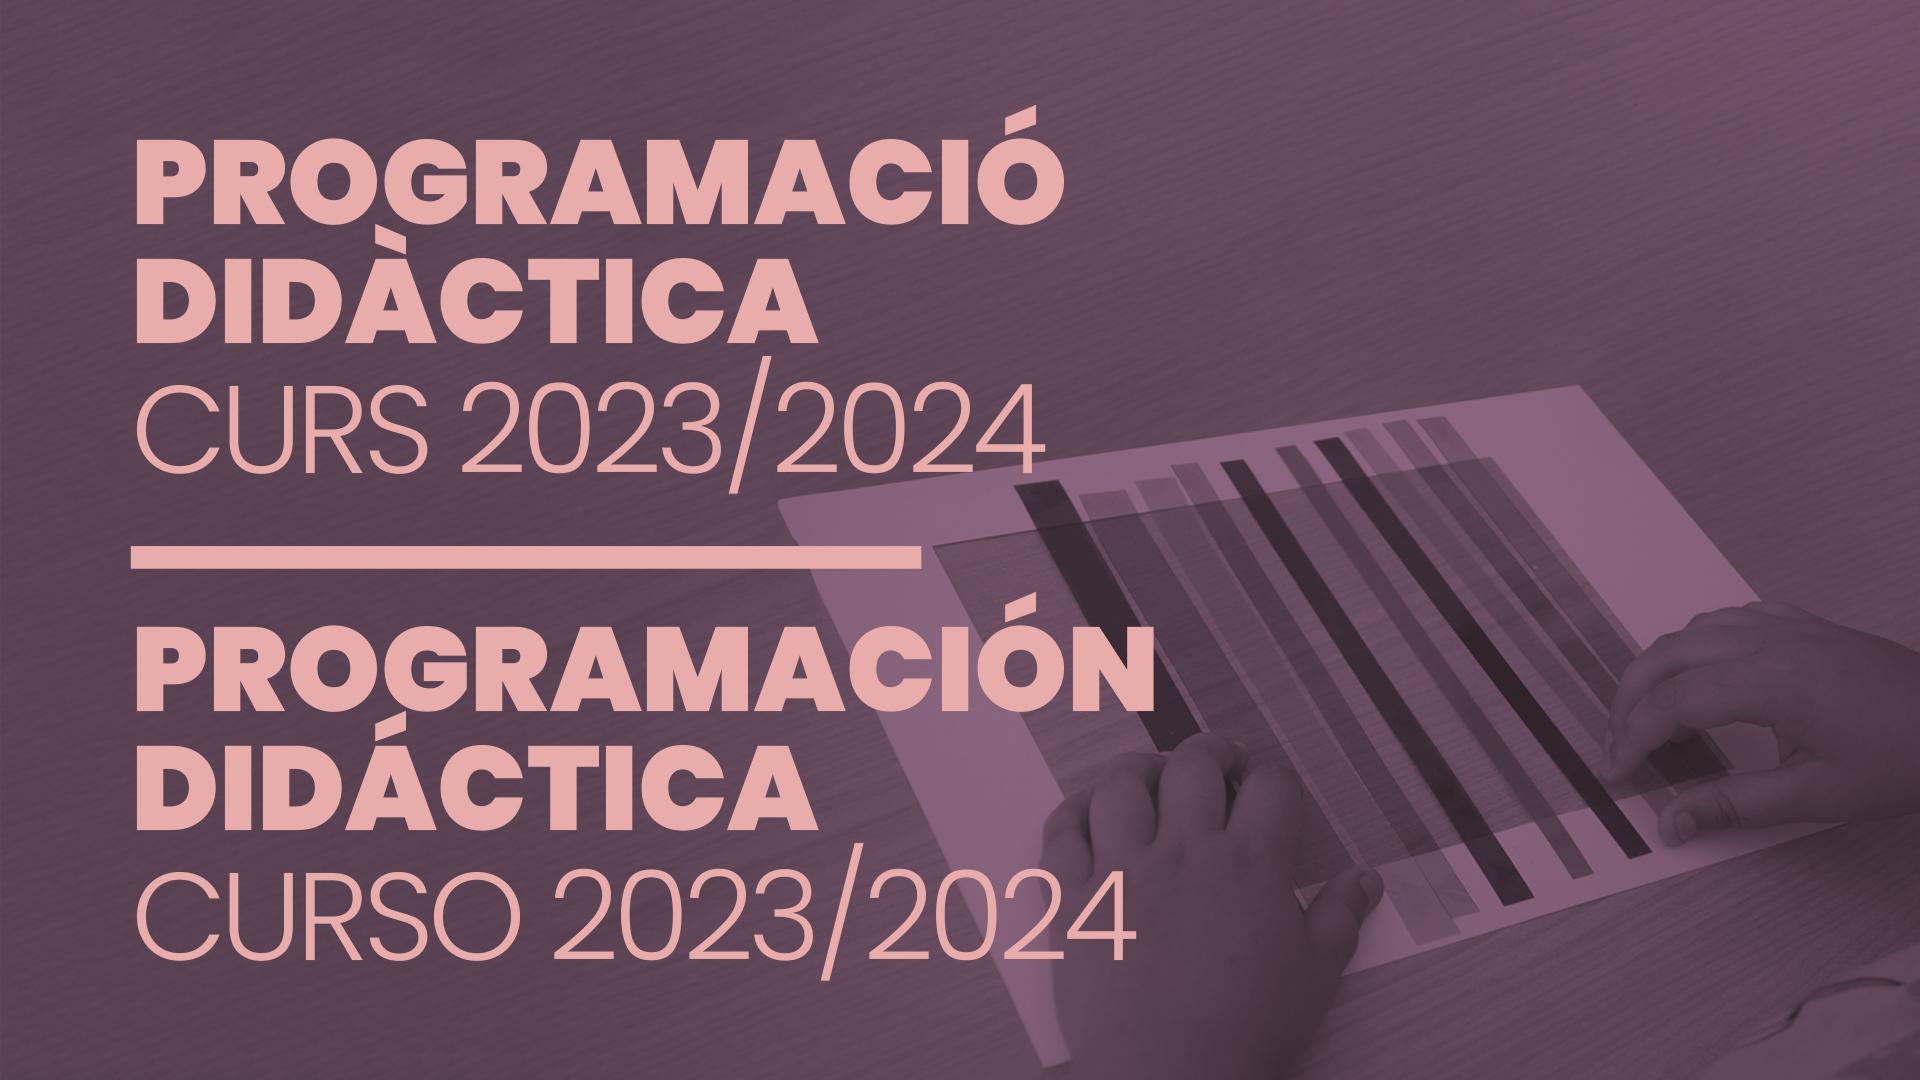 PROGRAMACIÓN DIDÁCTICA CURSO 2023/2024